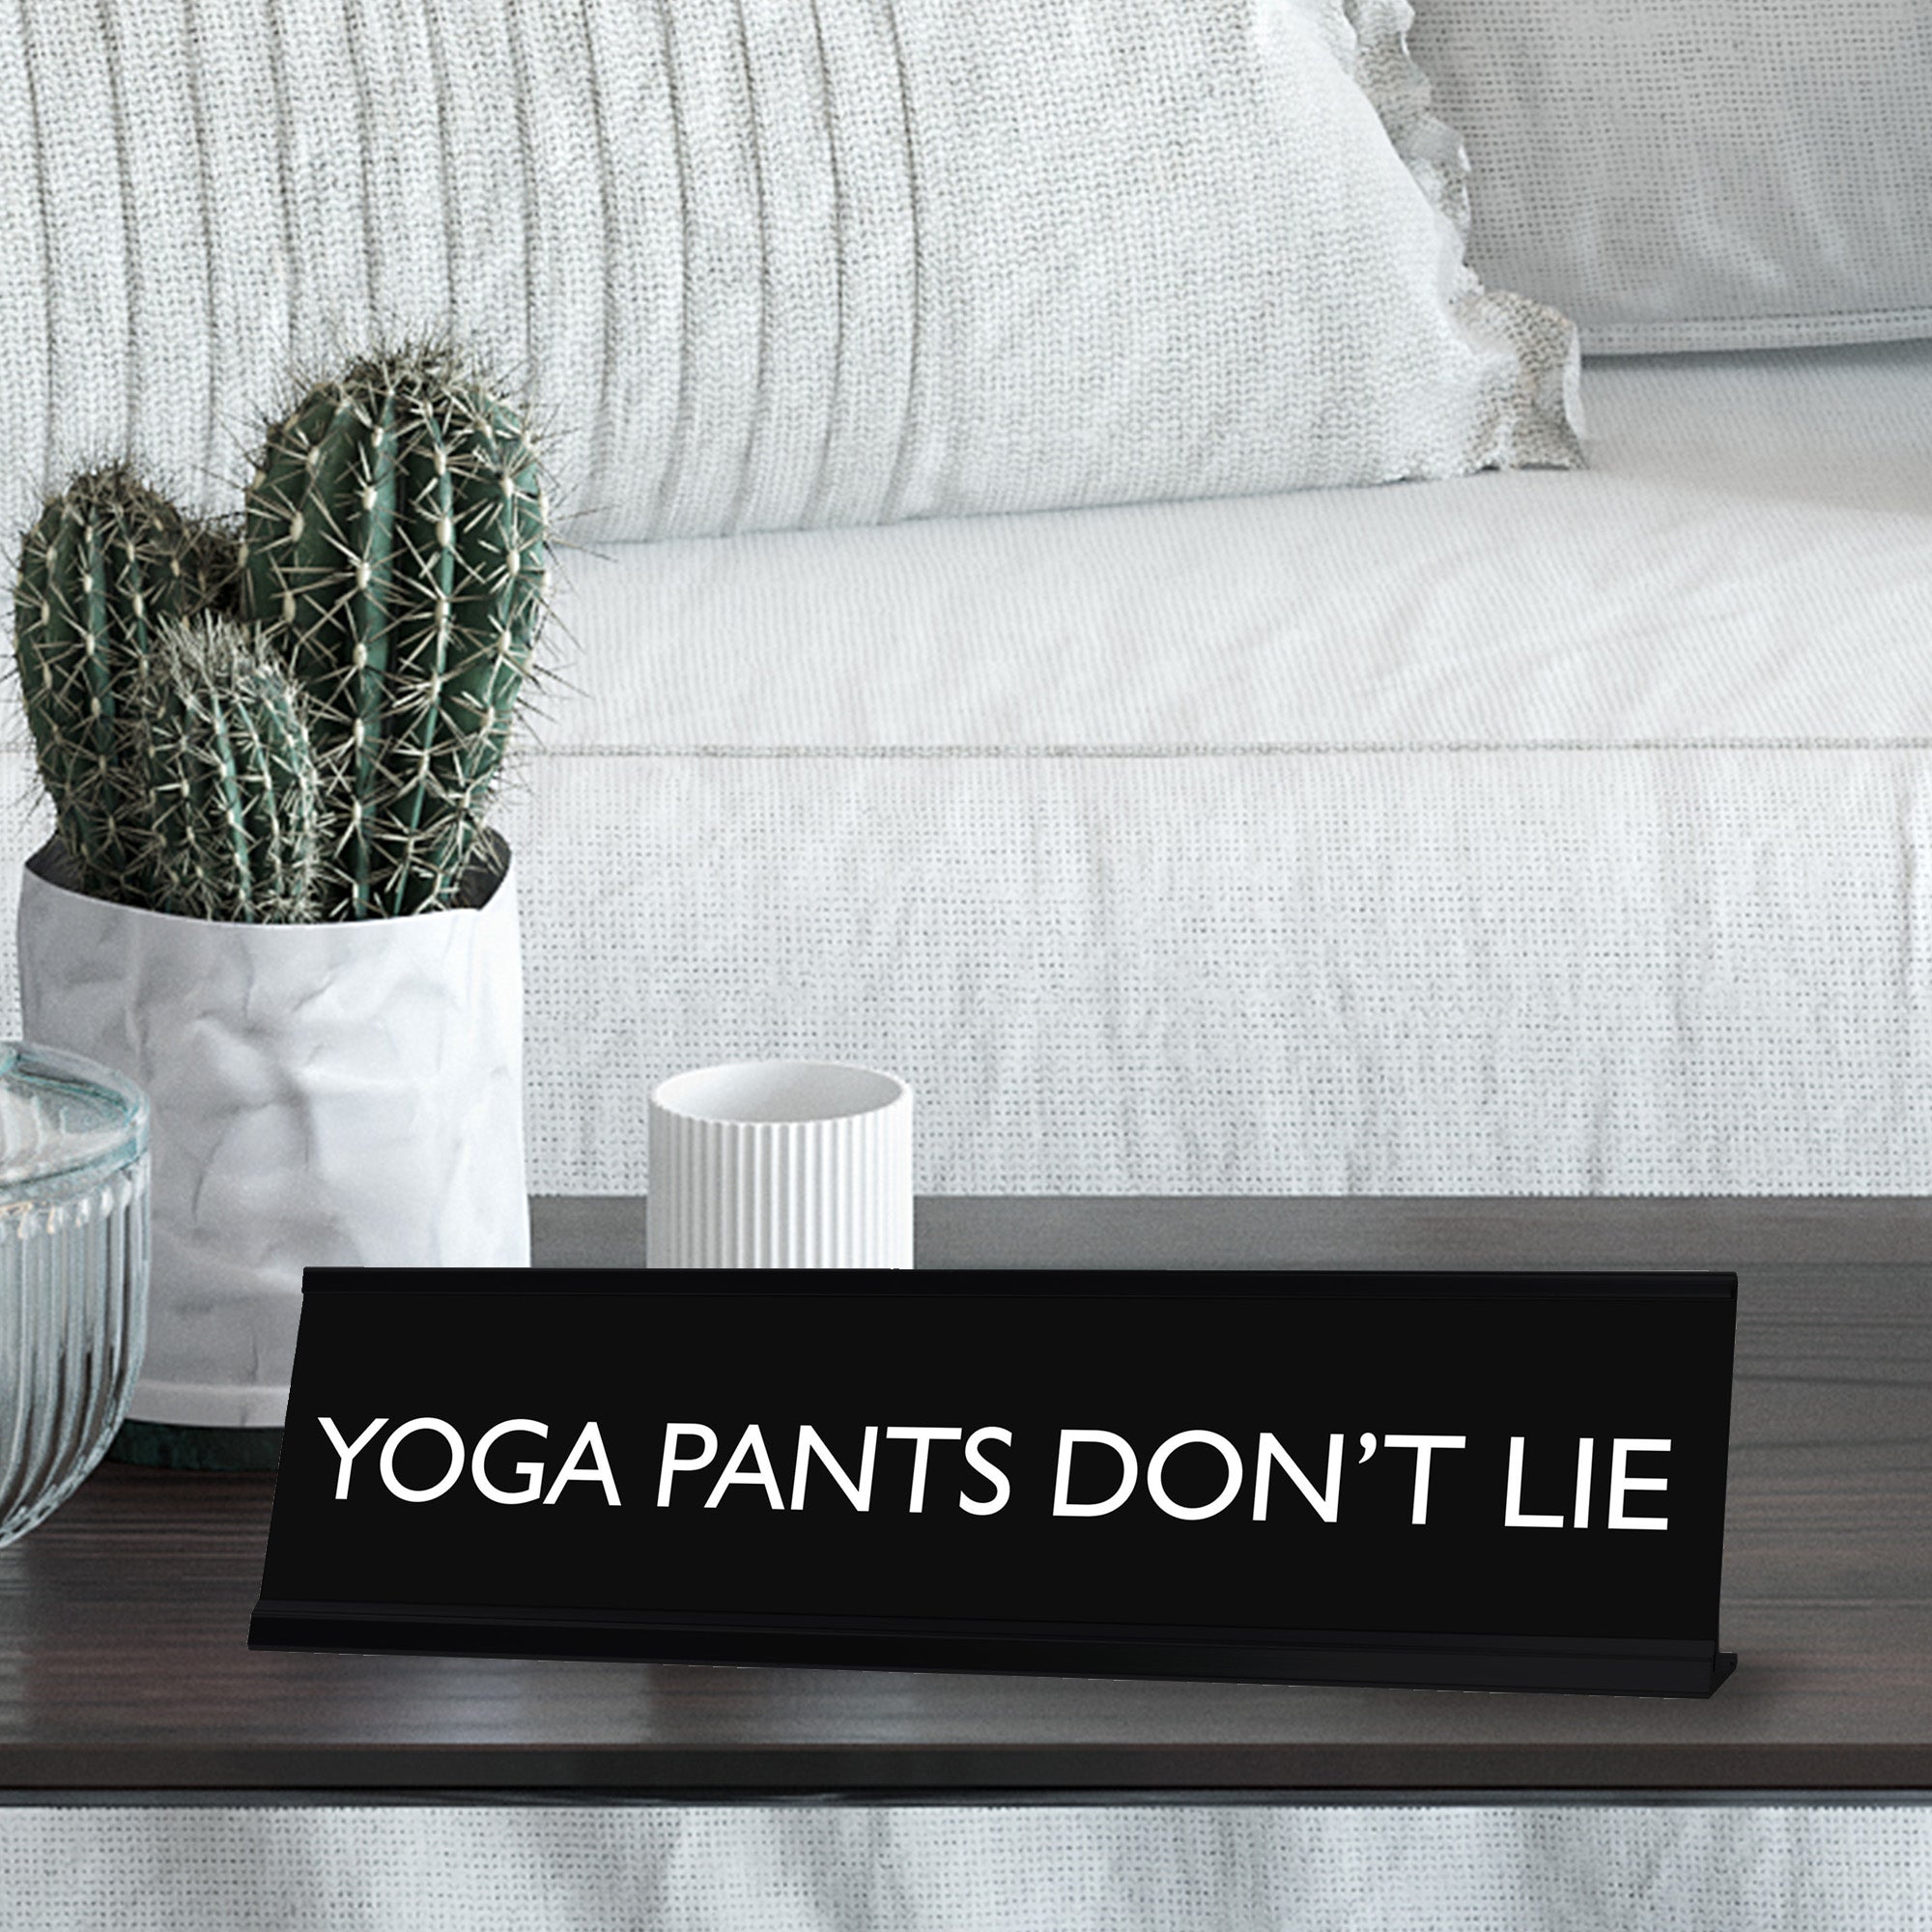 YOGA PANTS DON'T LIE Novelty Desk Sign